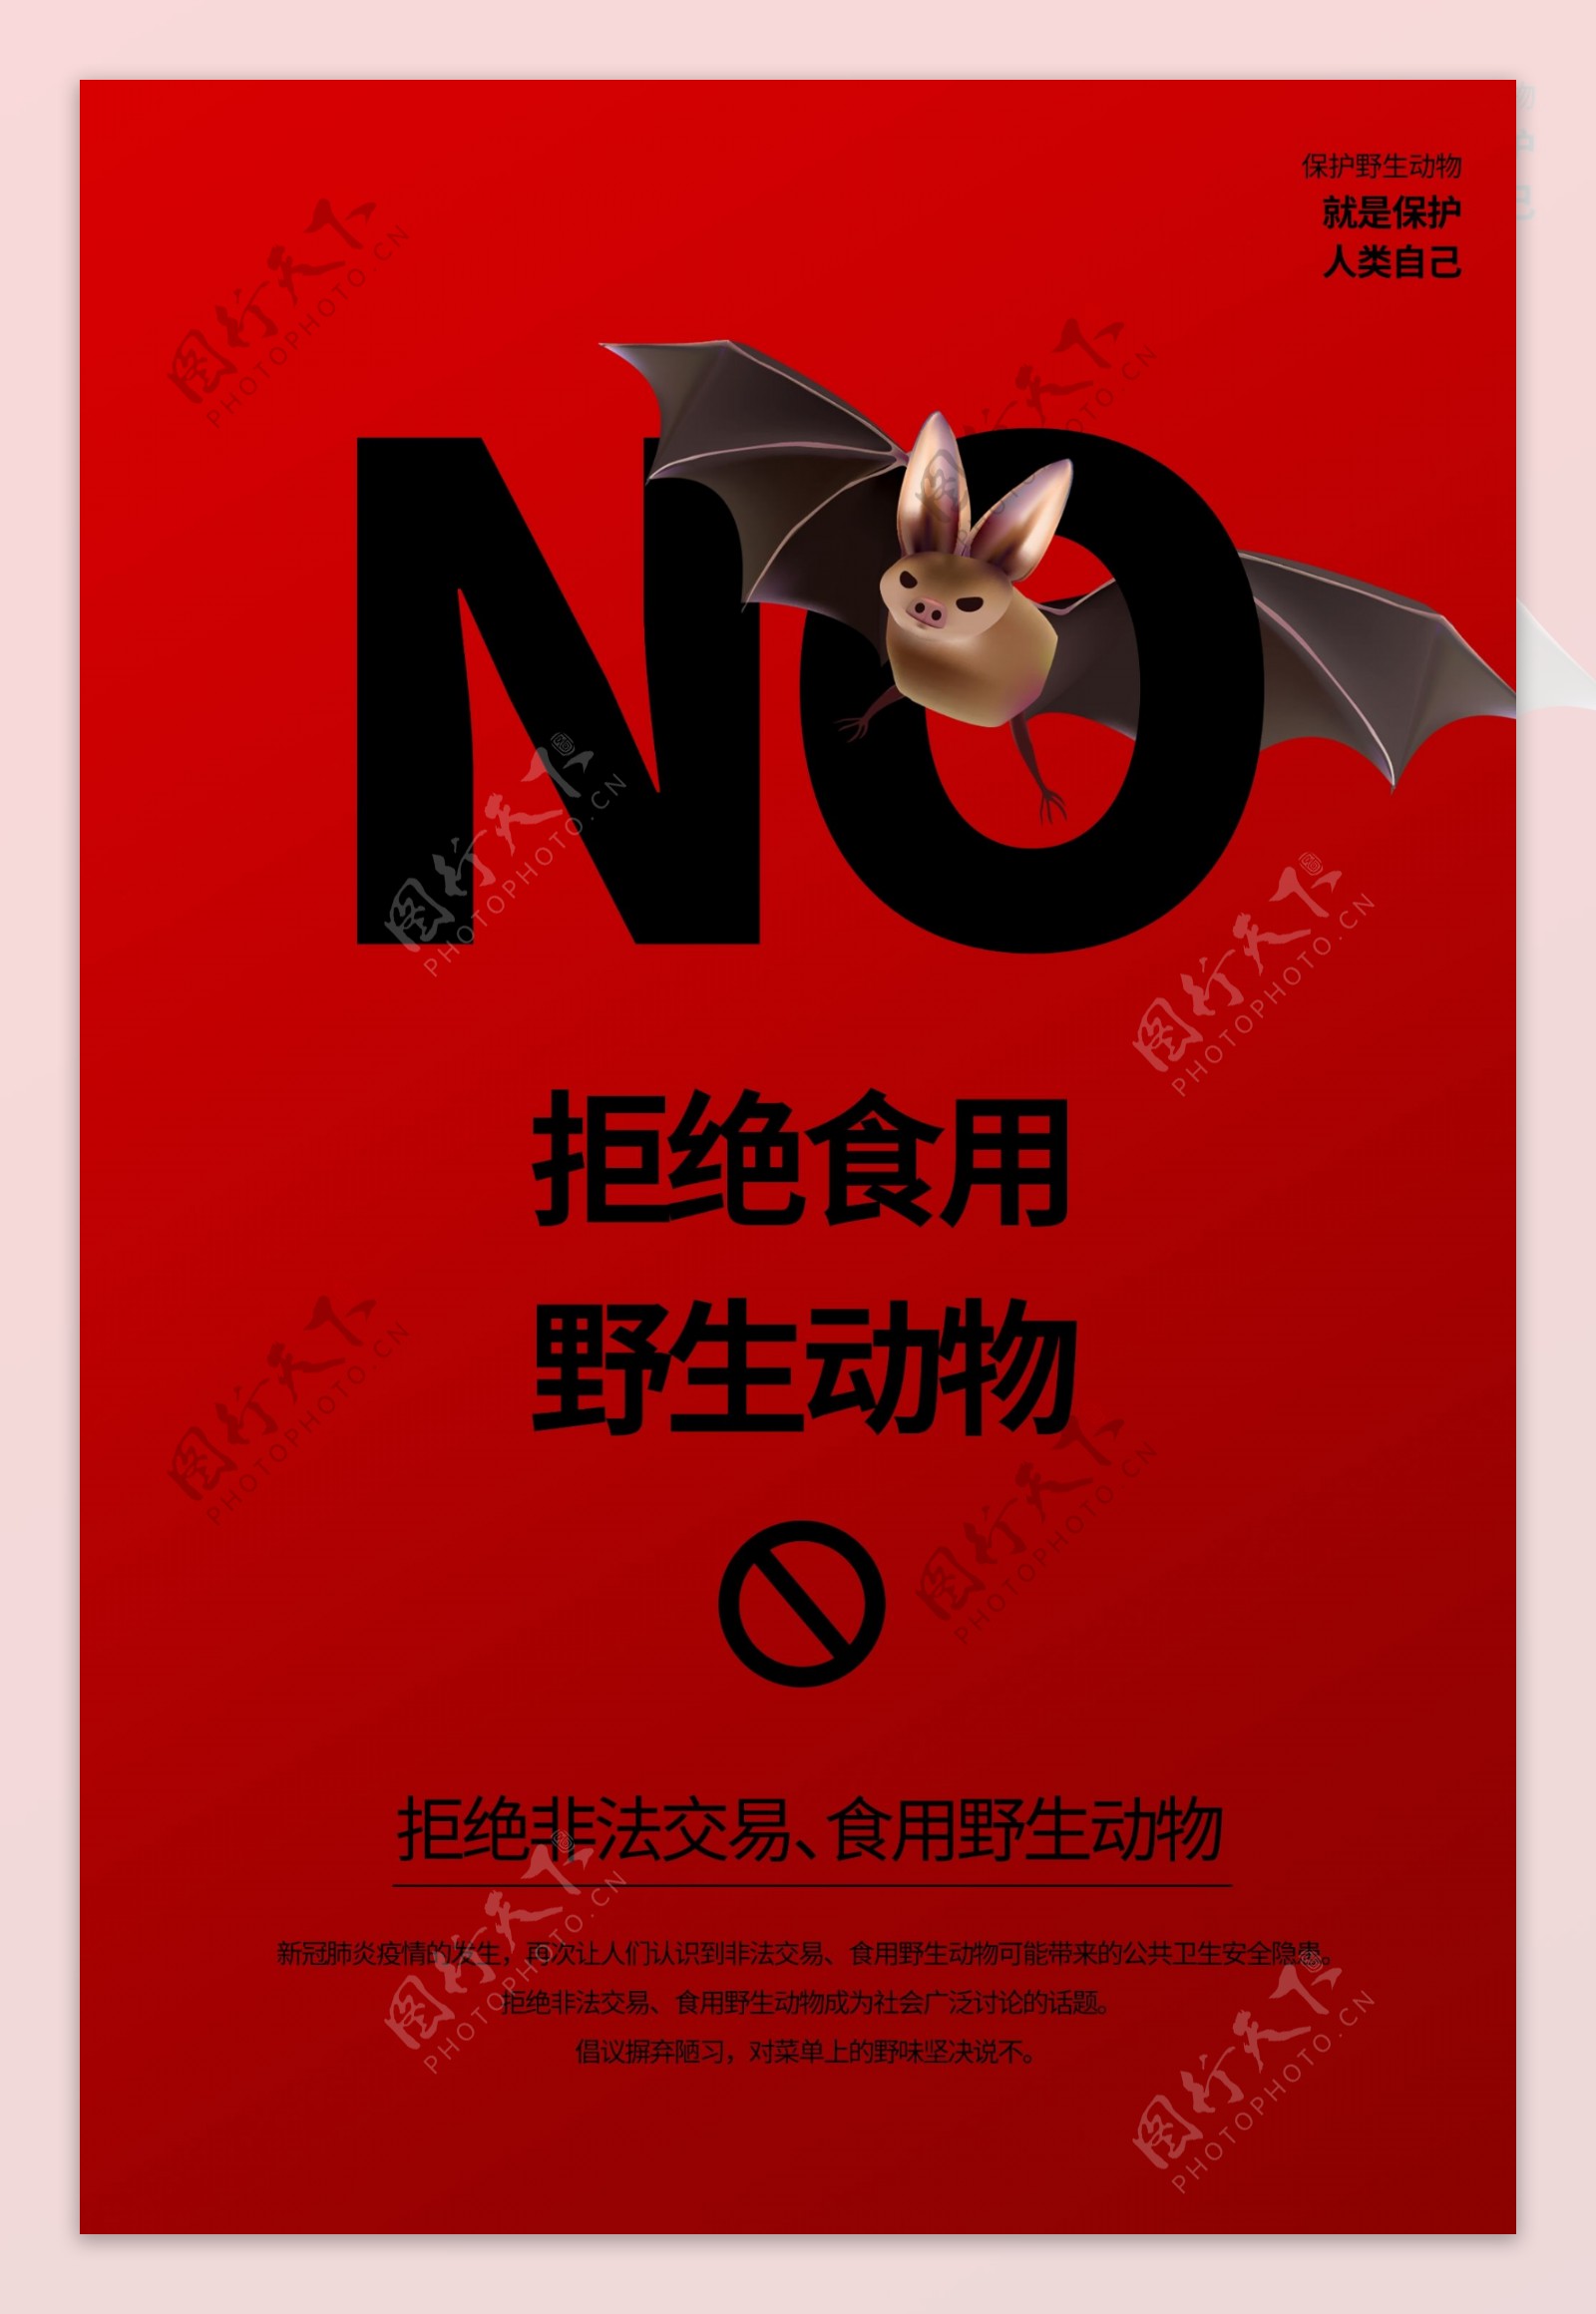 拒绝非法交易食用野生动物海报